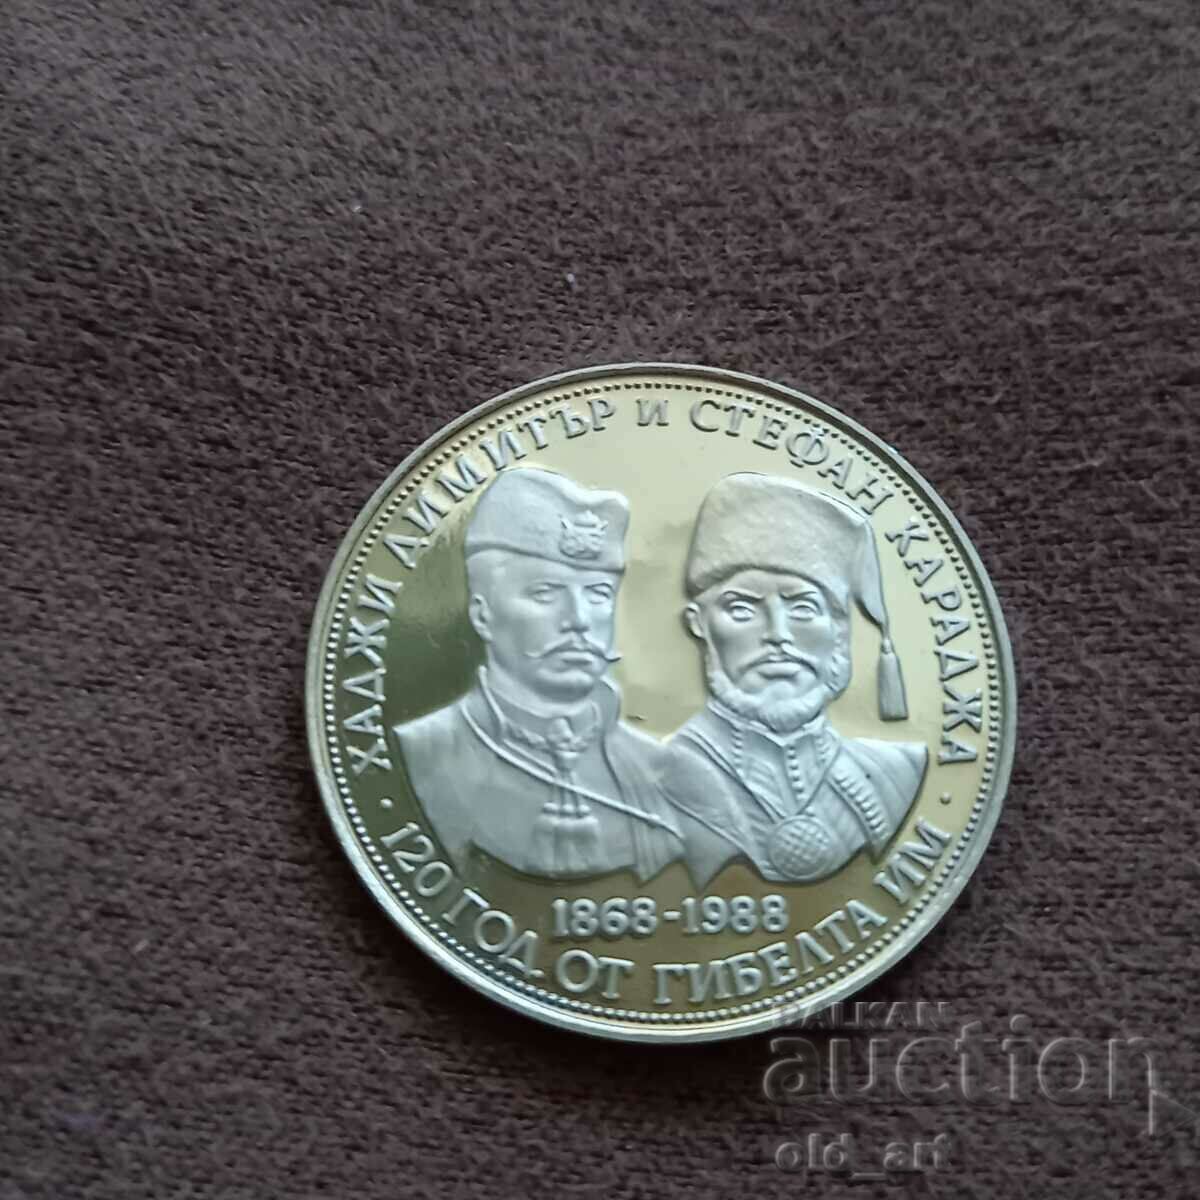 Monedă - 5 BGN 1988. Hadji Dimitar și Stefan Karadzha